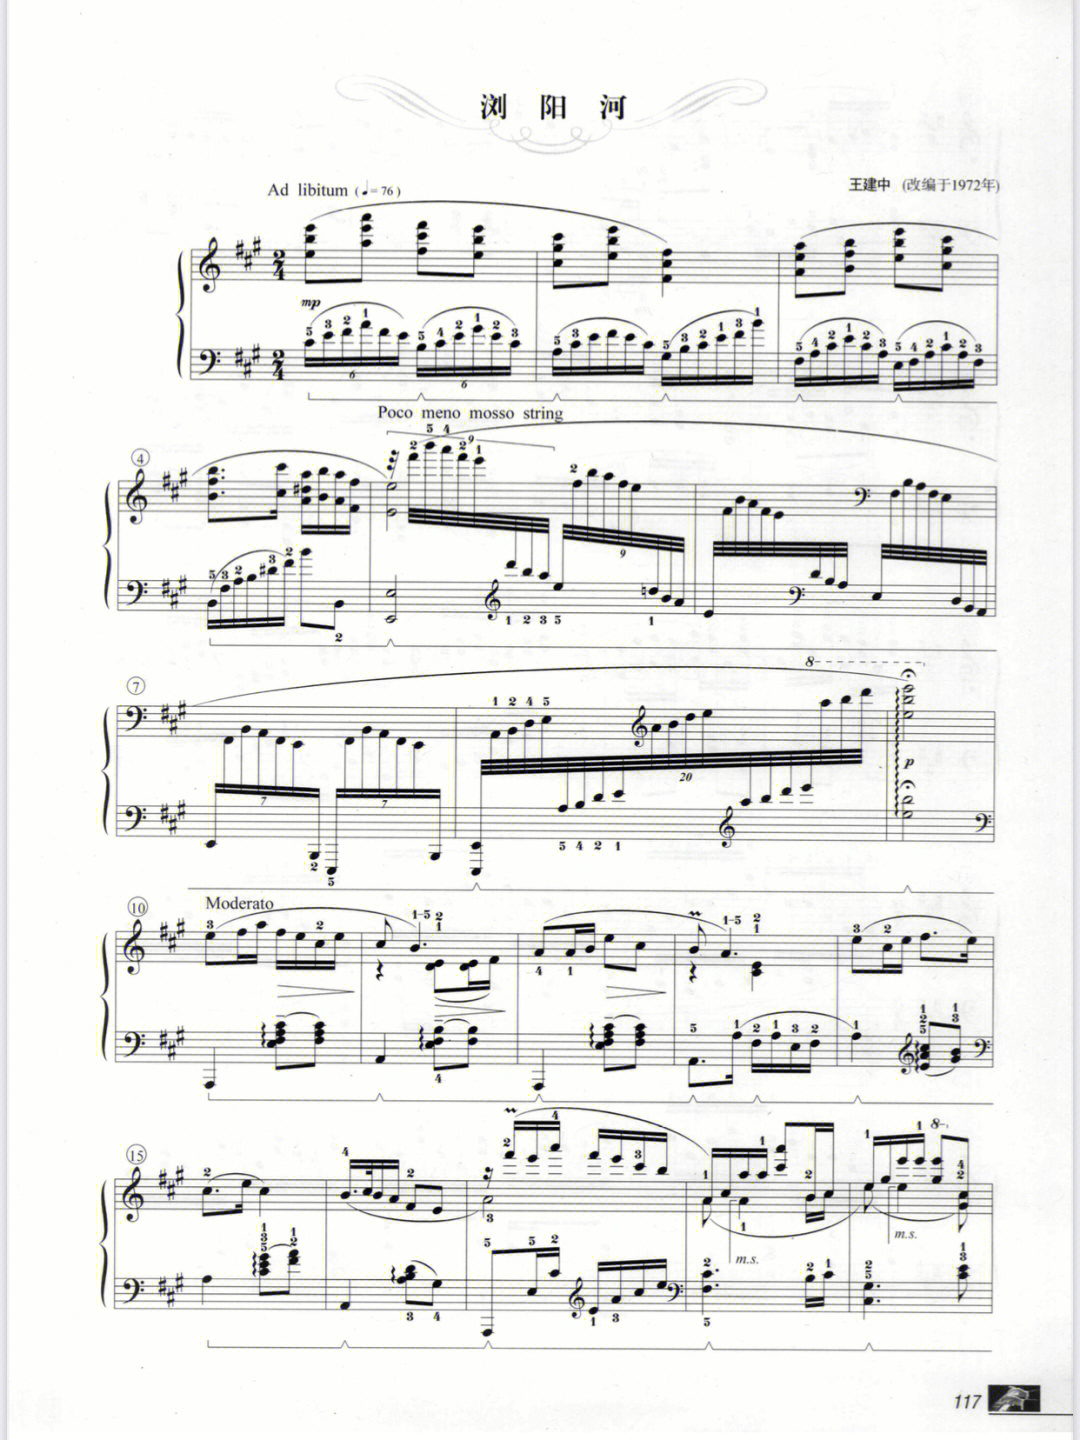 浏阳河钢琴十级曲谱图片